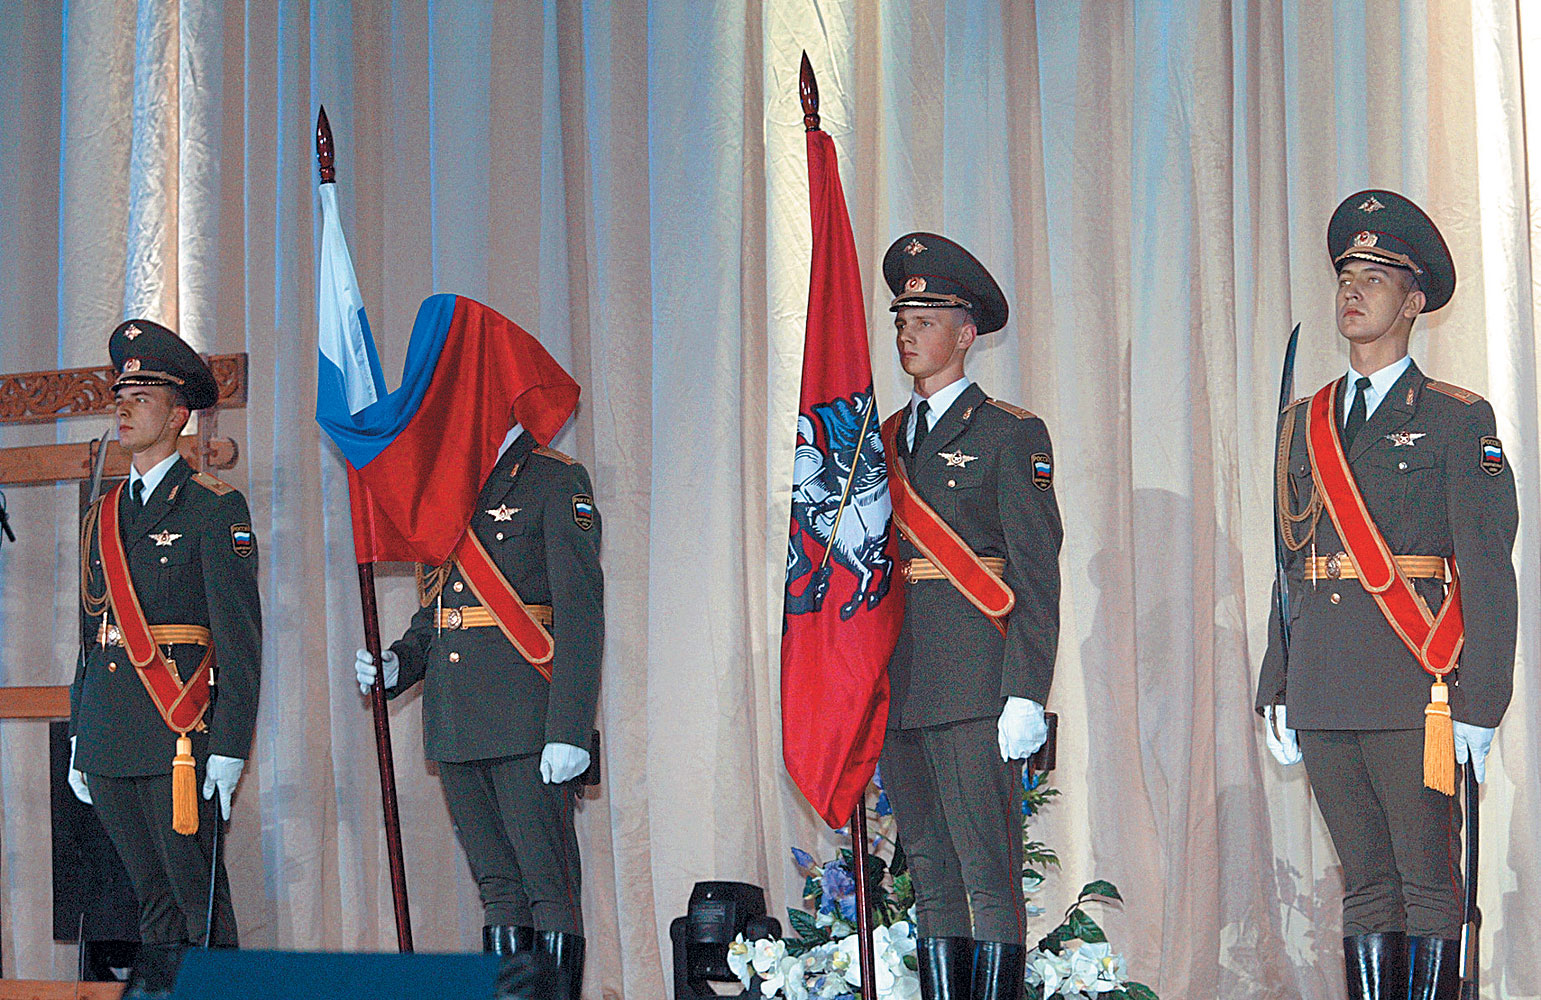  В праздничном убранстве воины столицы 
       Почетный караул на церемонии вручения орденов Святого Александра Невского. Москва, 2004 